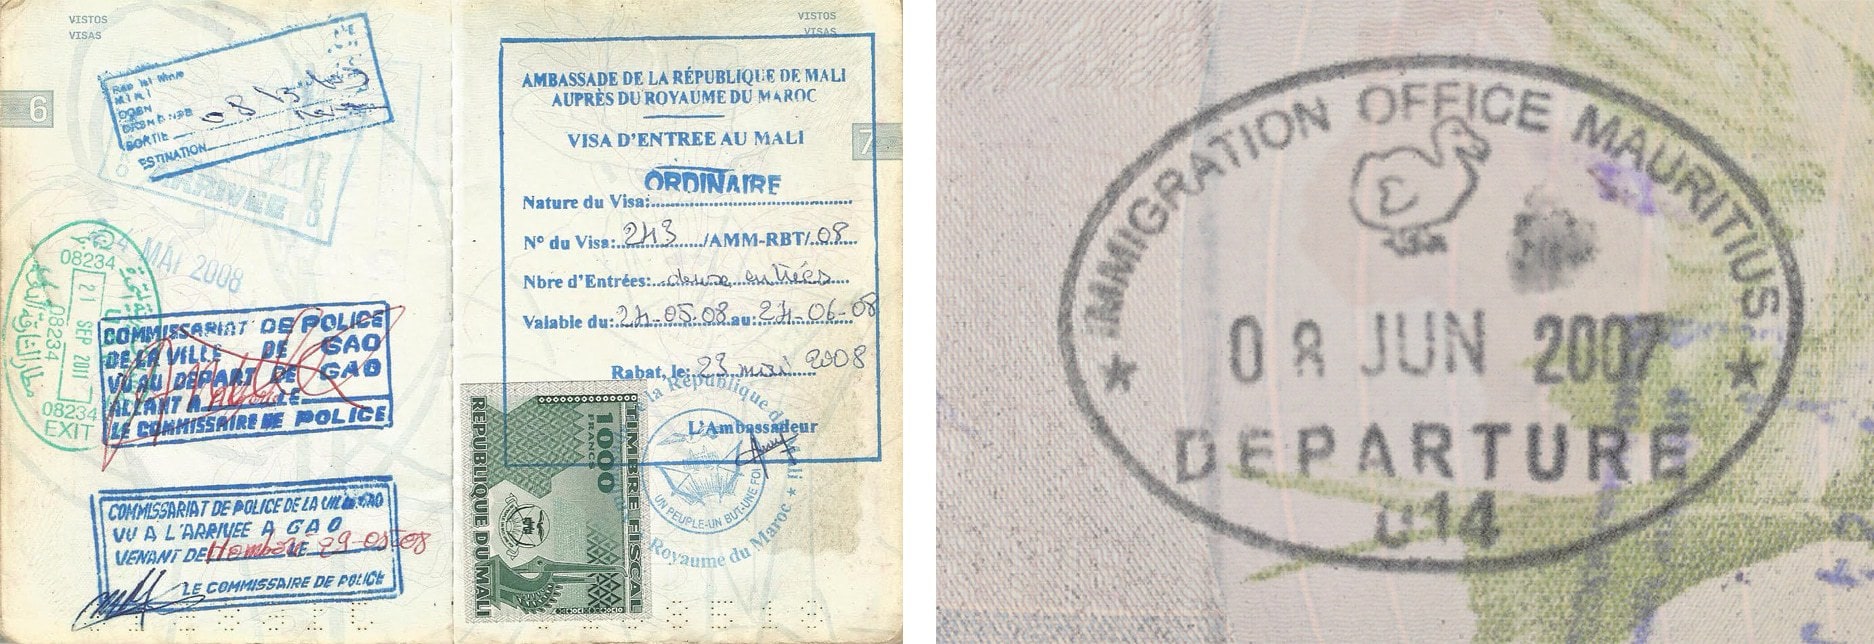 Passport stamp for Mali and Mauritius